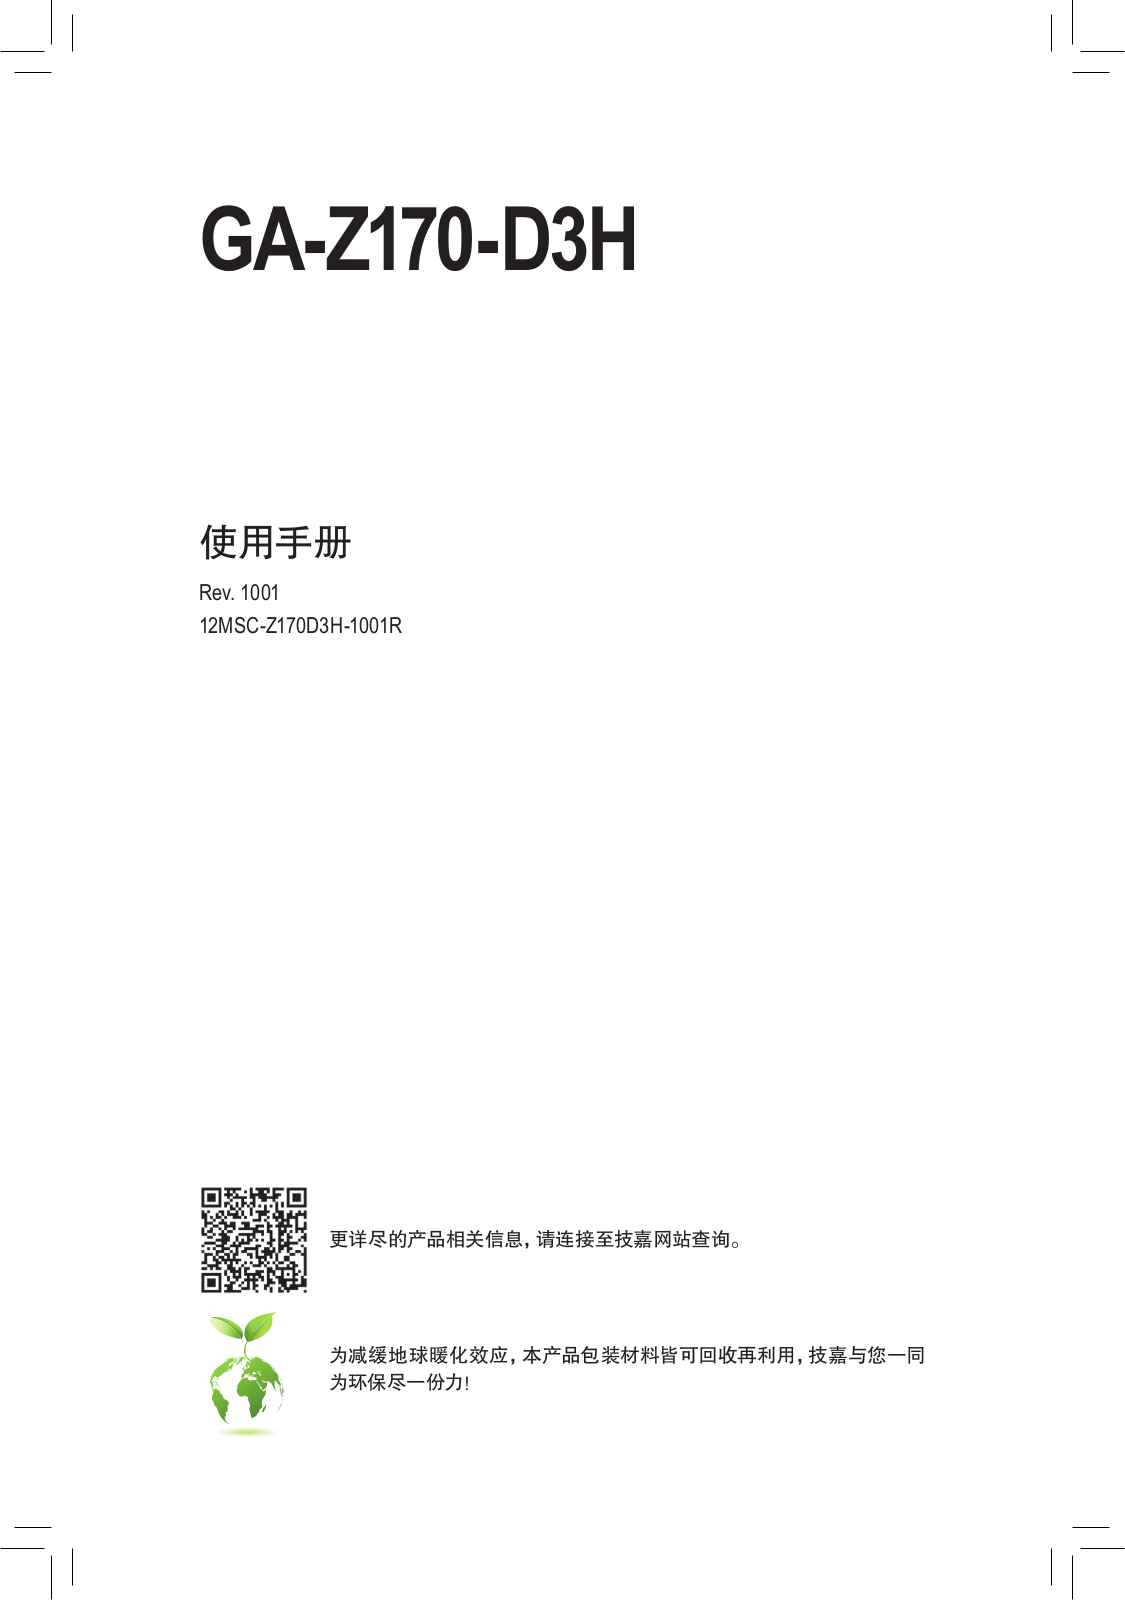 Gigabyte GA-Z170-D3H User Manual